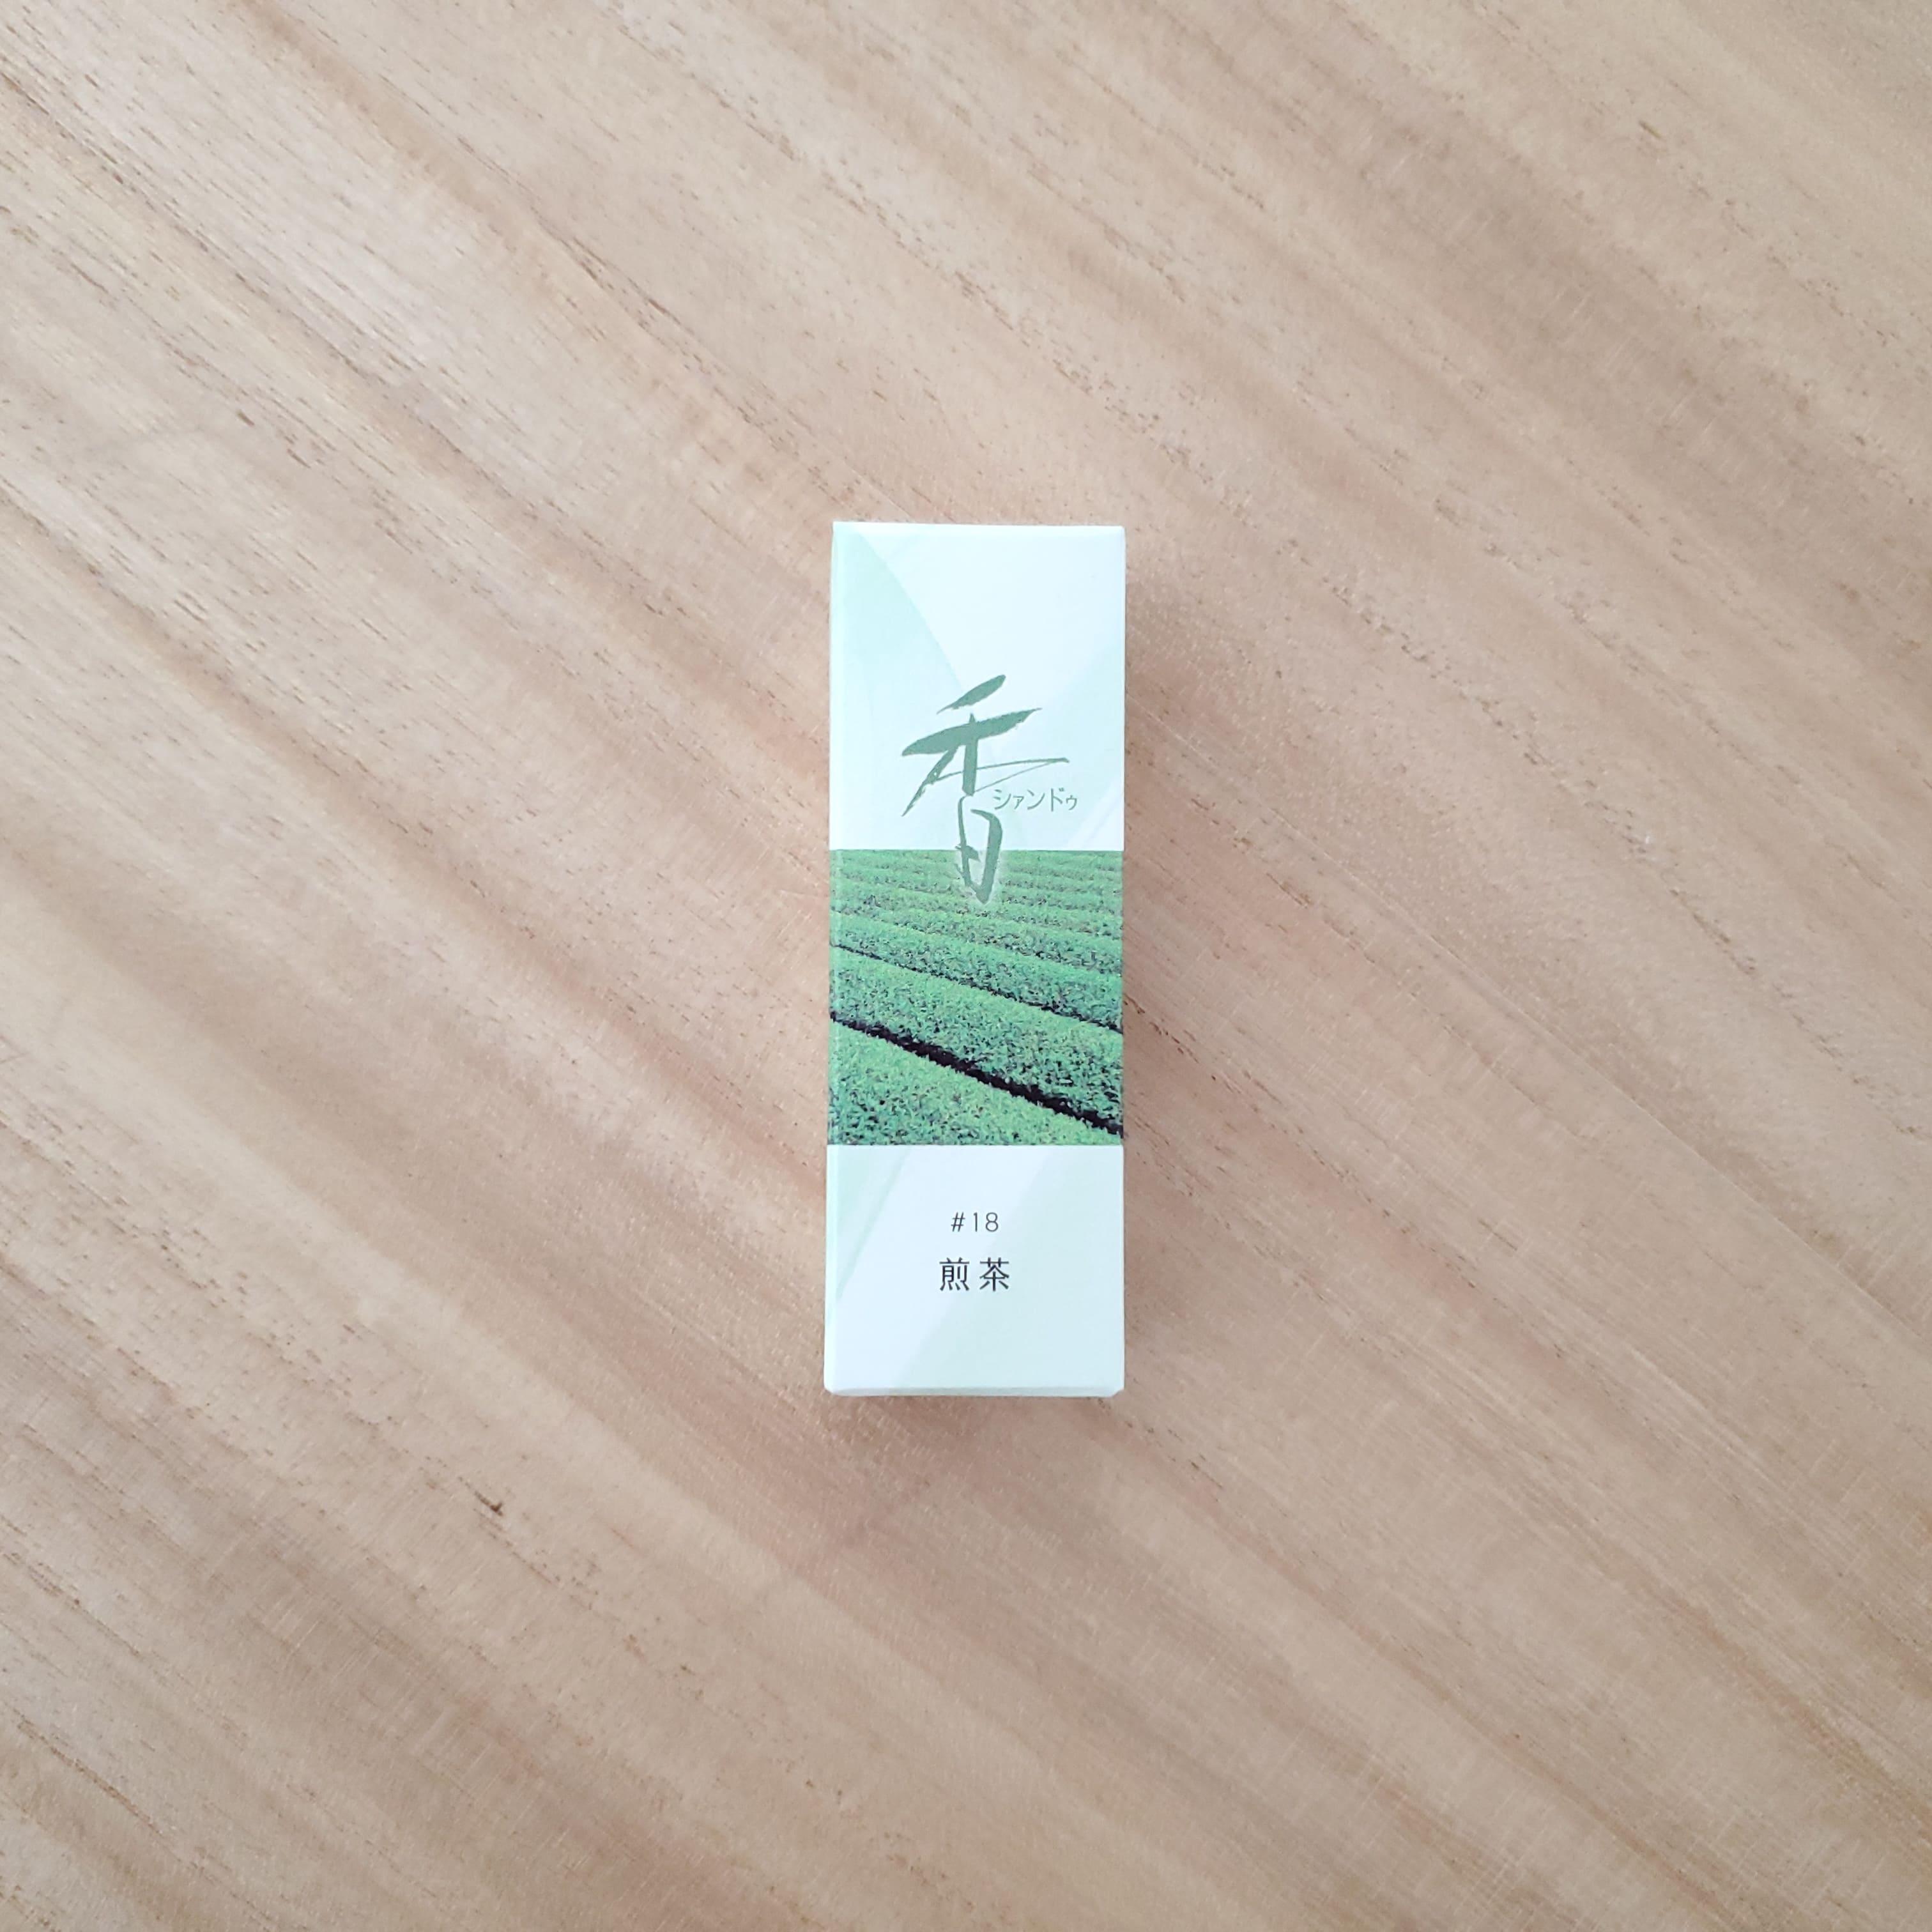 松栄堂 お香 Xiang Do 煎茶 #18 シァンドゥ 京都 スティック アロマ インセンス 日本製 松栄堂のお香 シァンドゥ・煎茶 メール便を選択して送料無料 凛とした新茶の表情清らかな風、うまれたての緑ふわりと広がる香りの空間をお楽しみください。お部屋焚きやプレゼントにもおすすめです。おすすめの使用場所：玄関 寝室 リビング トイレ お座敷■商品詳細メーカー:松栄堂香り系統：グリーン系煙の量：ふつうパッケージ：紙箱パッケージサイズ：縦8.4cm×横2.8cm×高さ2.4cm産地：日本形状：棒色：緑色長さ：7cm時間：約15〜20分内容量：20本入注意事項：火の取り扱いには十分ご注意下さい。付属の香立てをご使用の際は、不燃性のお皿などの上に置いてからお使いください。備考：簡易香立付【メール便を選択して送料無料】 7